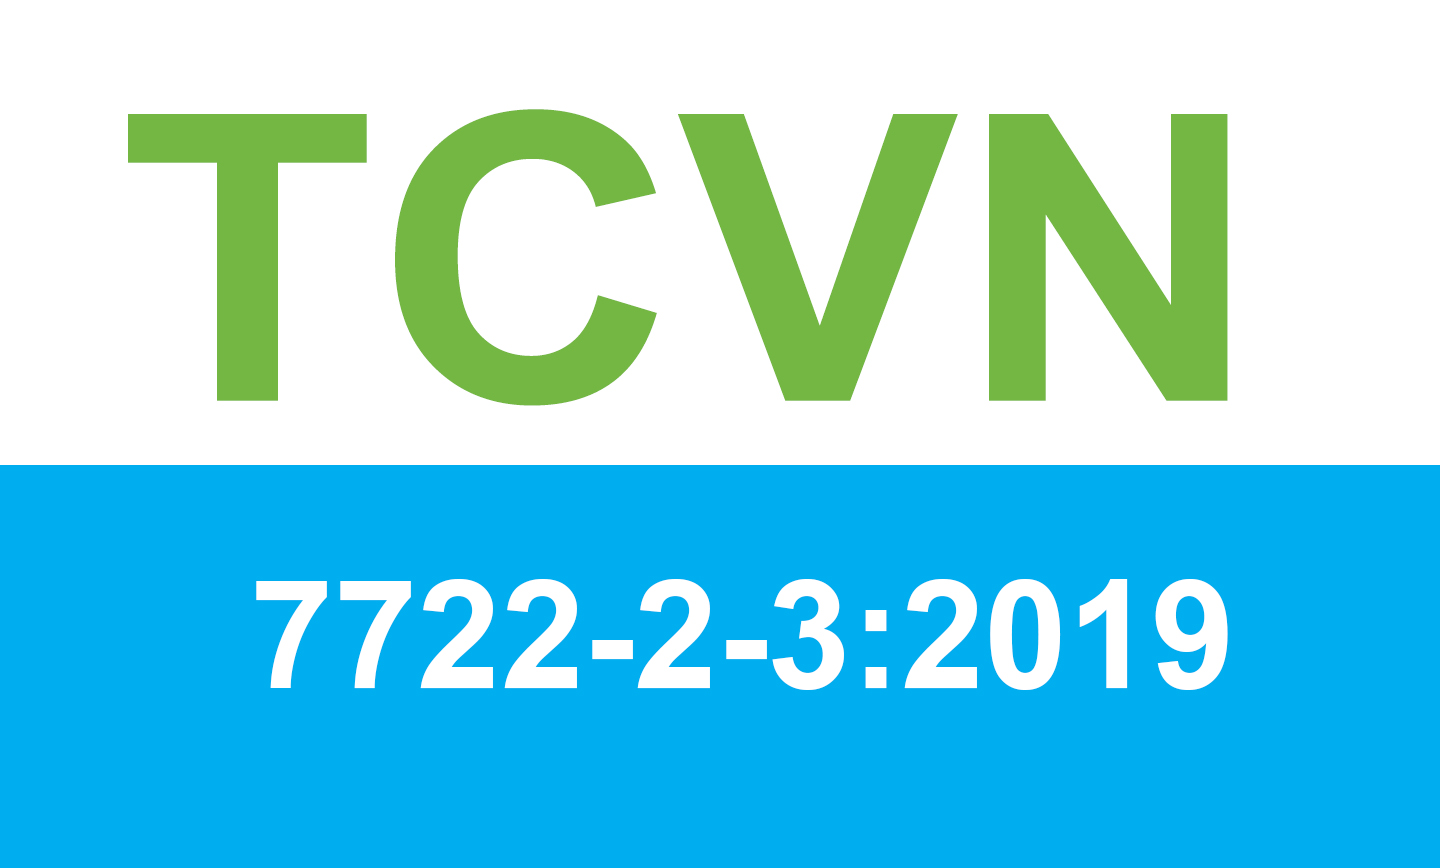 TCVN 7722-2-3-2019